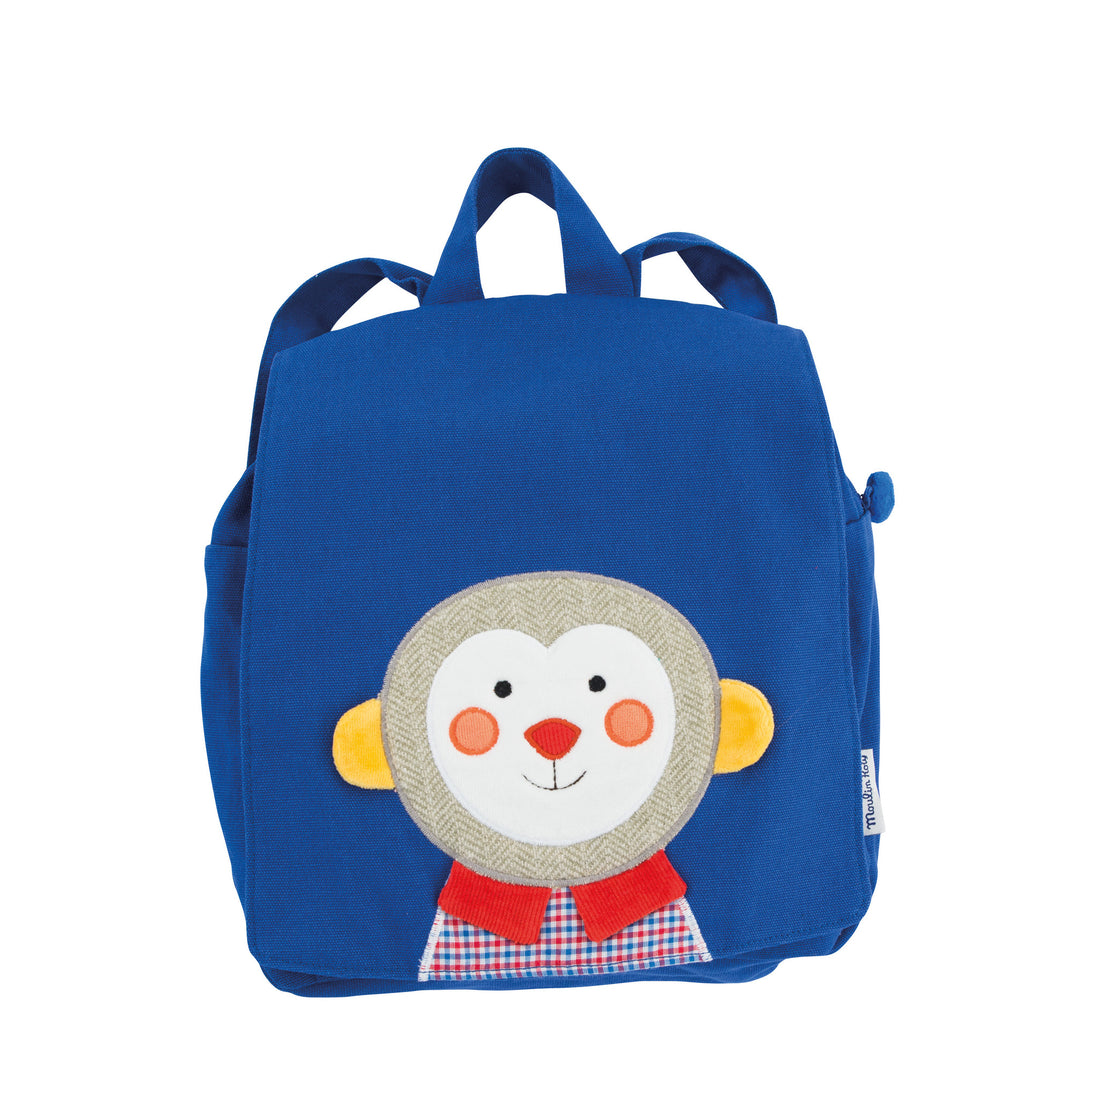 moulin-roty-monkey-backpack-pop-01